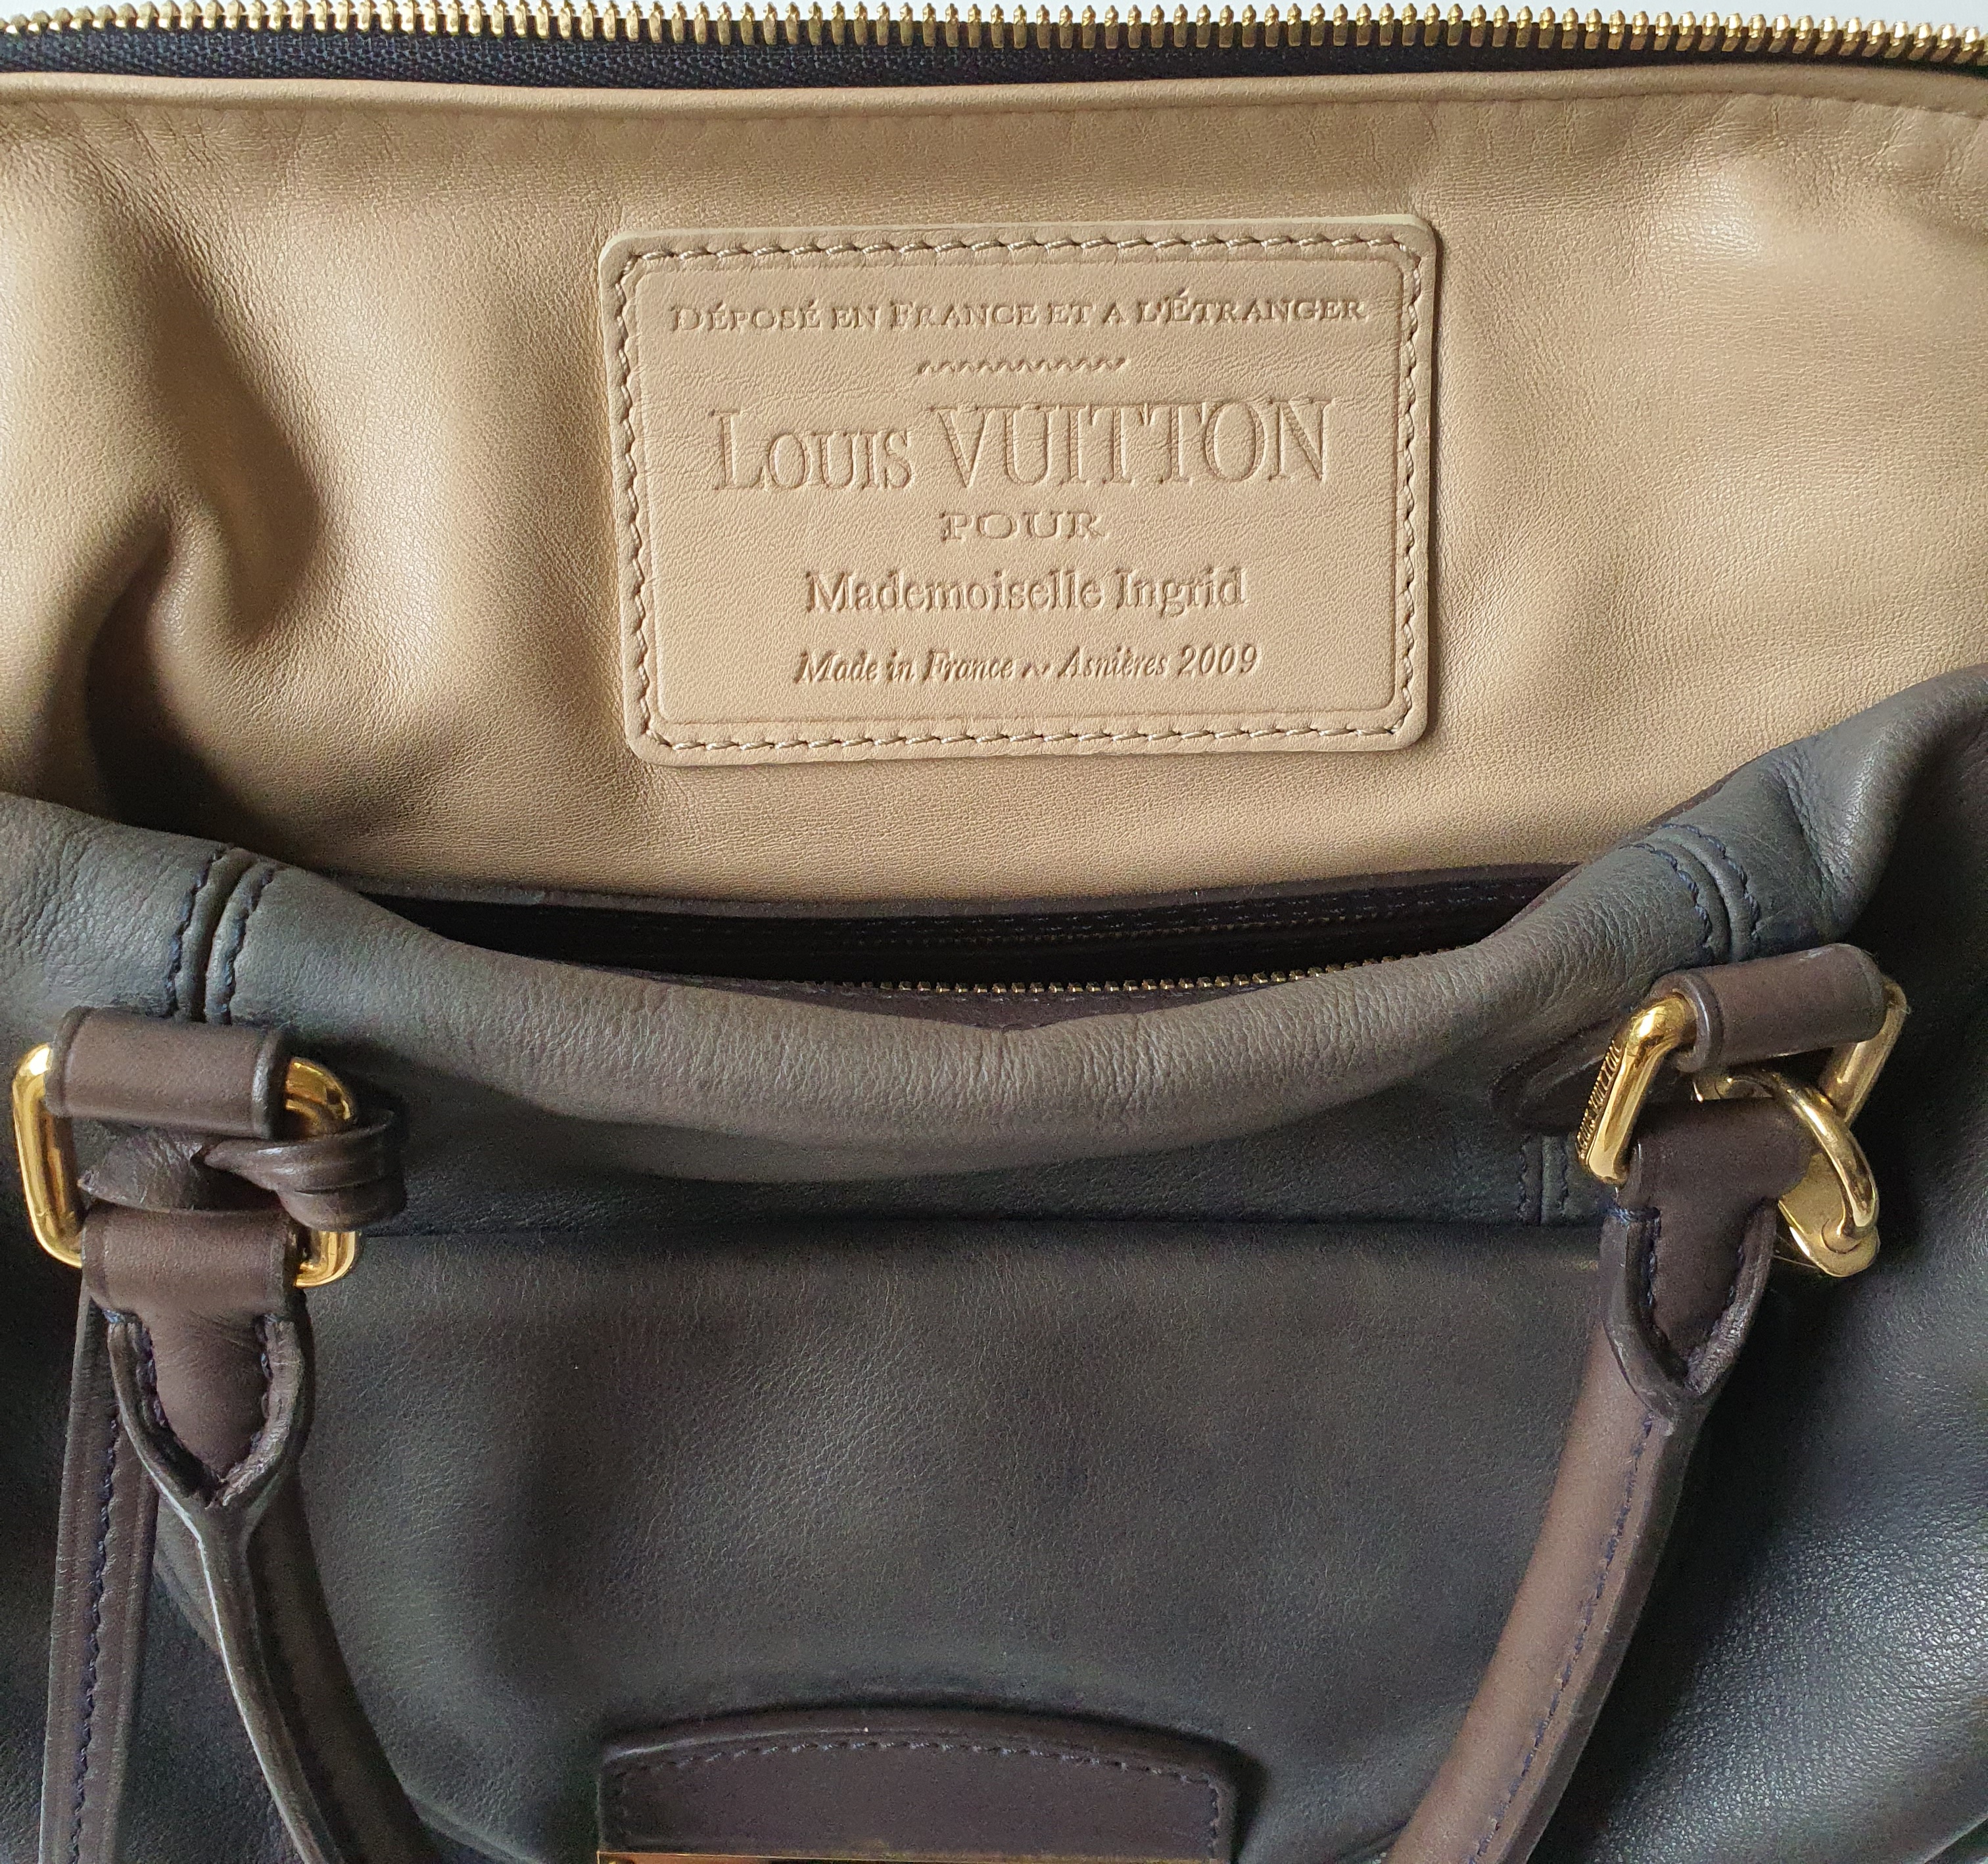 Louis Vuitton - Mademoiselle